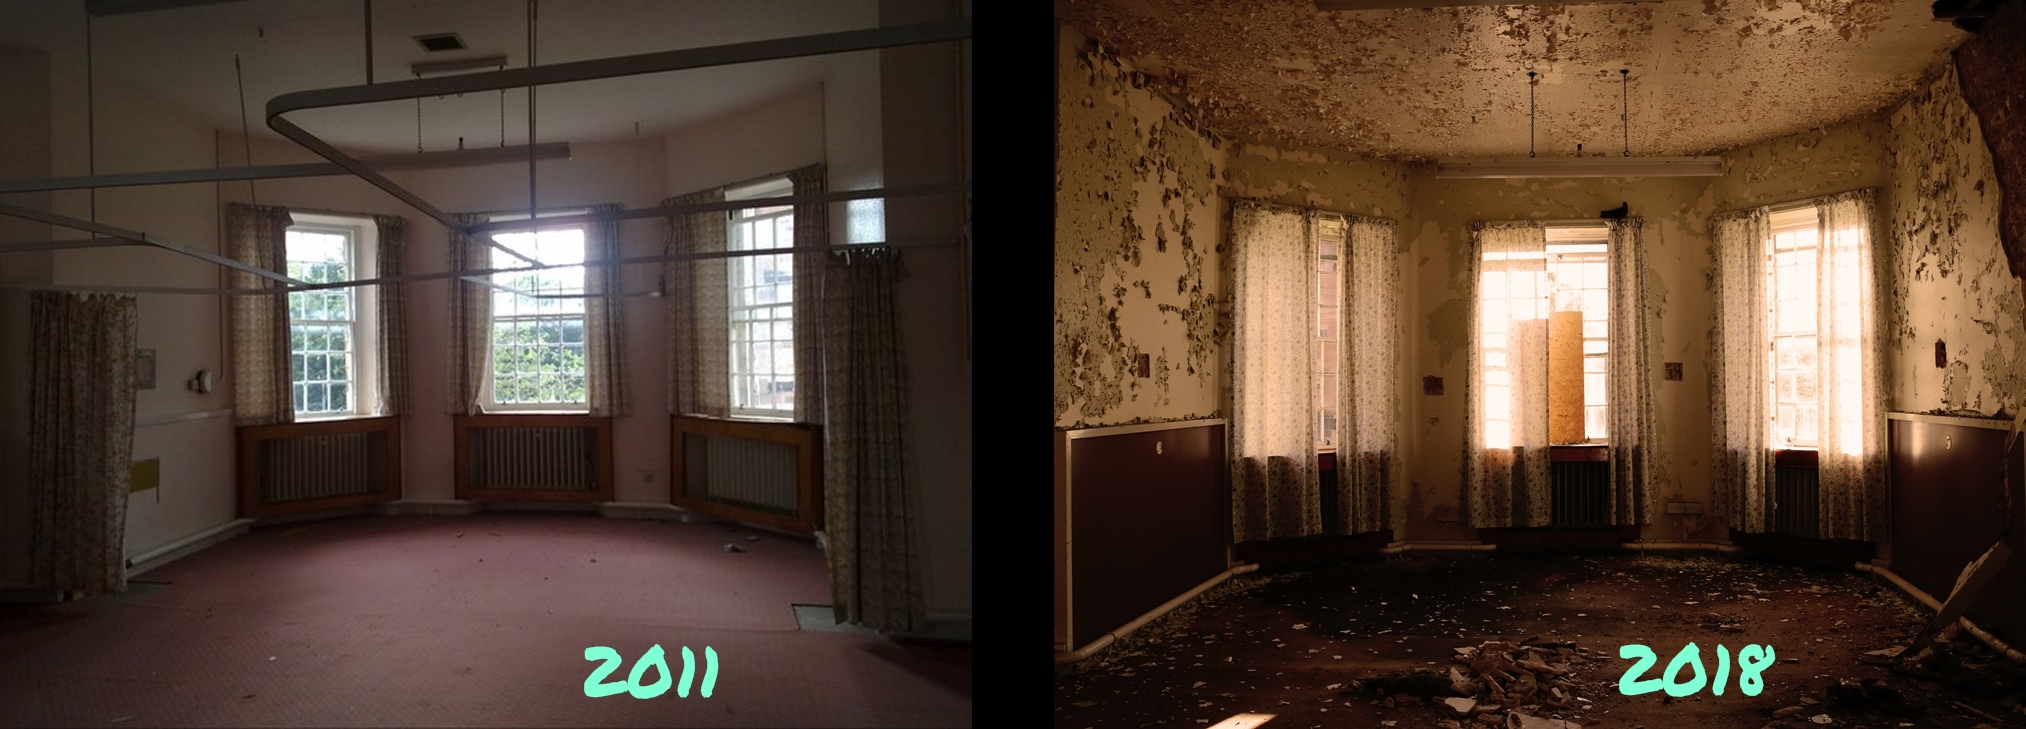 Bár a két kép között nem telt el sok idő - 7 év - a különbség elég látványos. A baloldali kép még a kórház bezárásának idején készült.